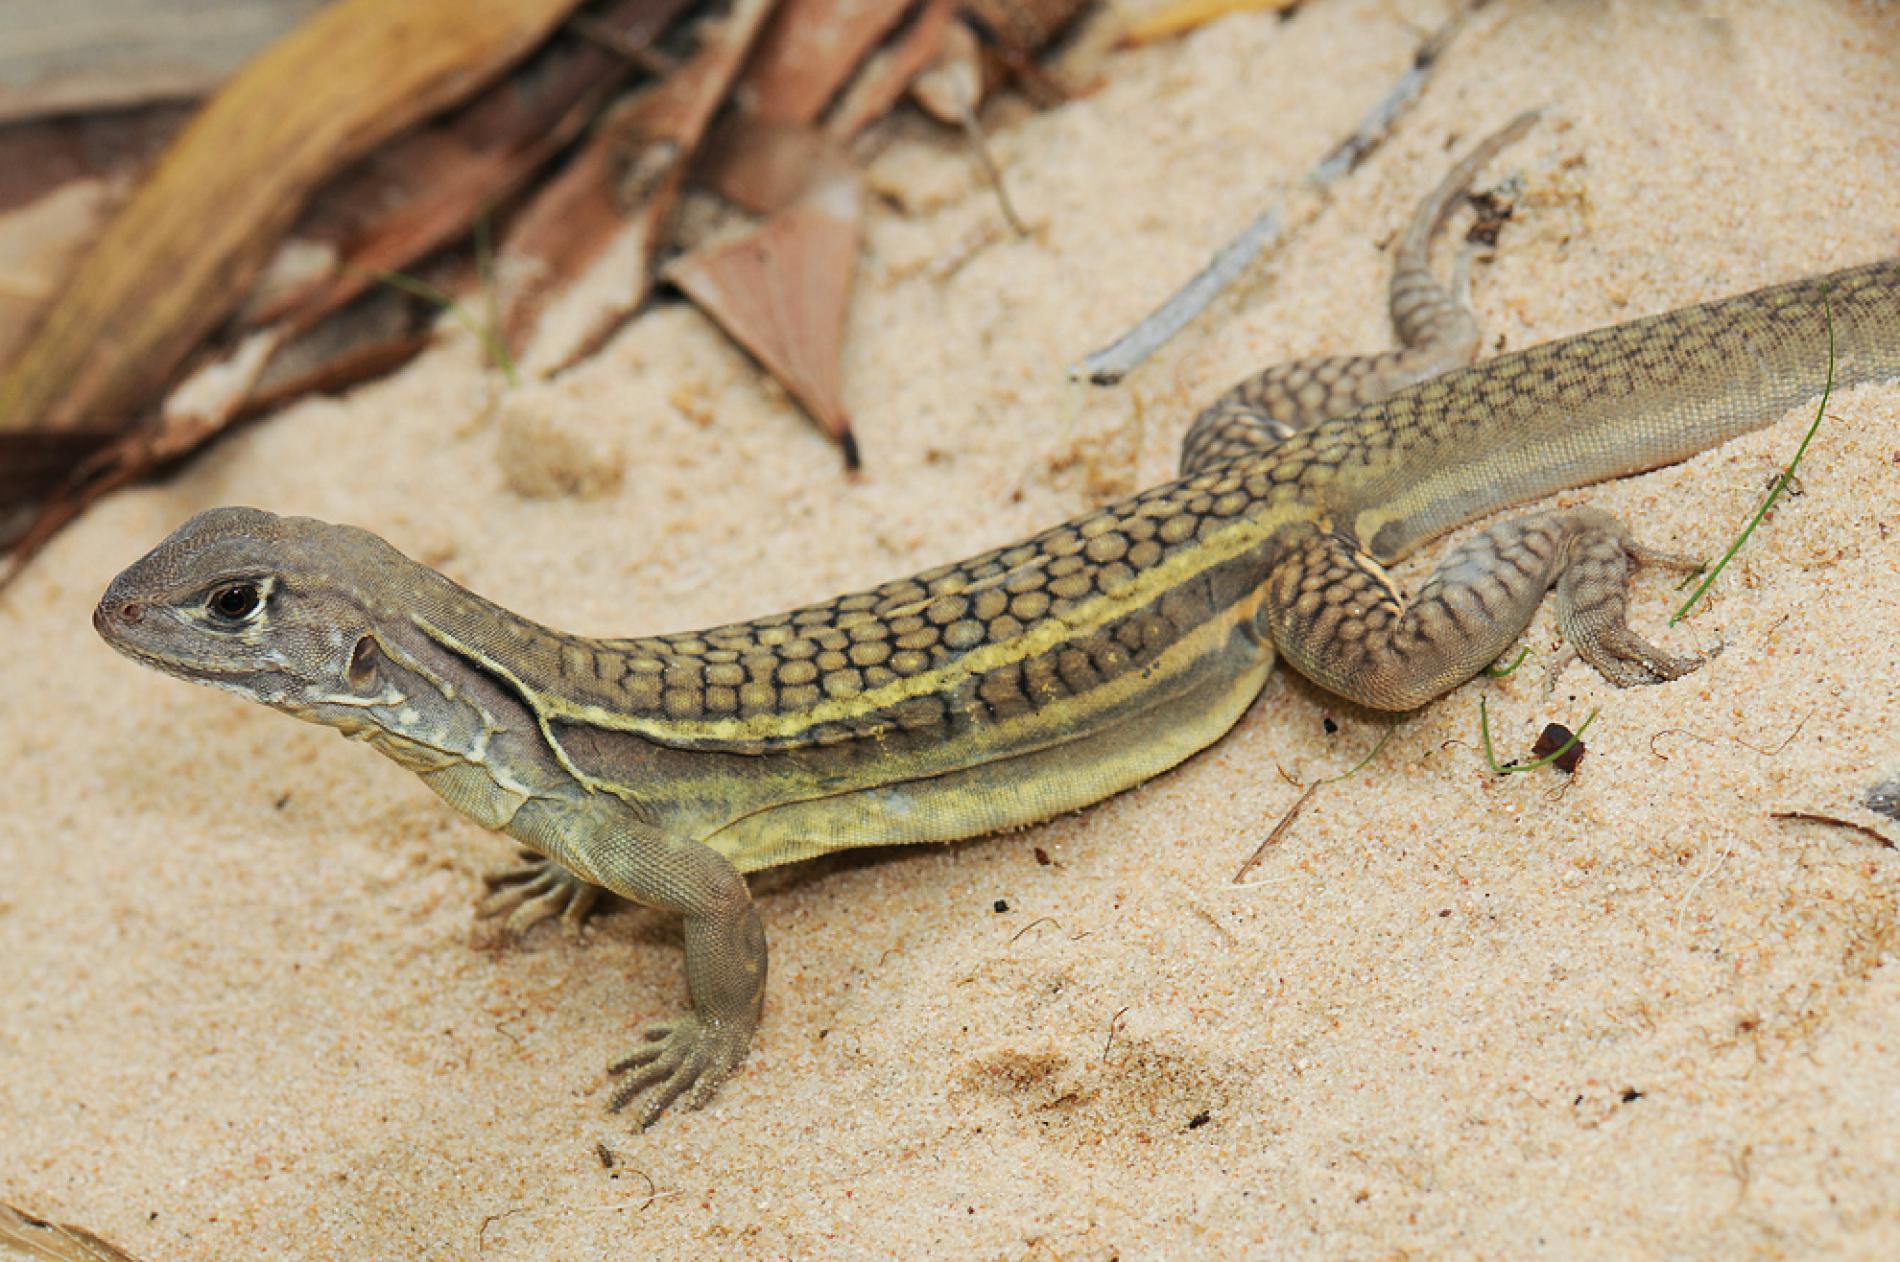 New Self-Cloning Lizard Found in Vietnam Restaurant